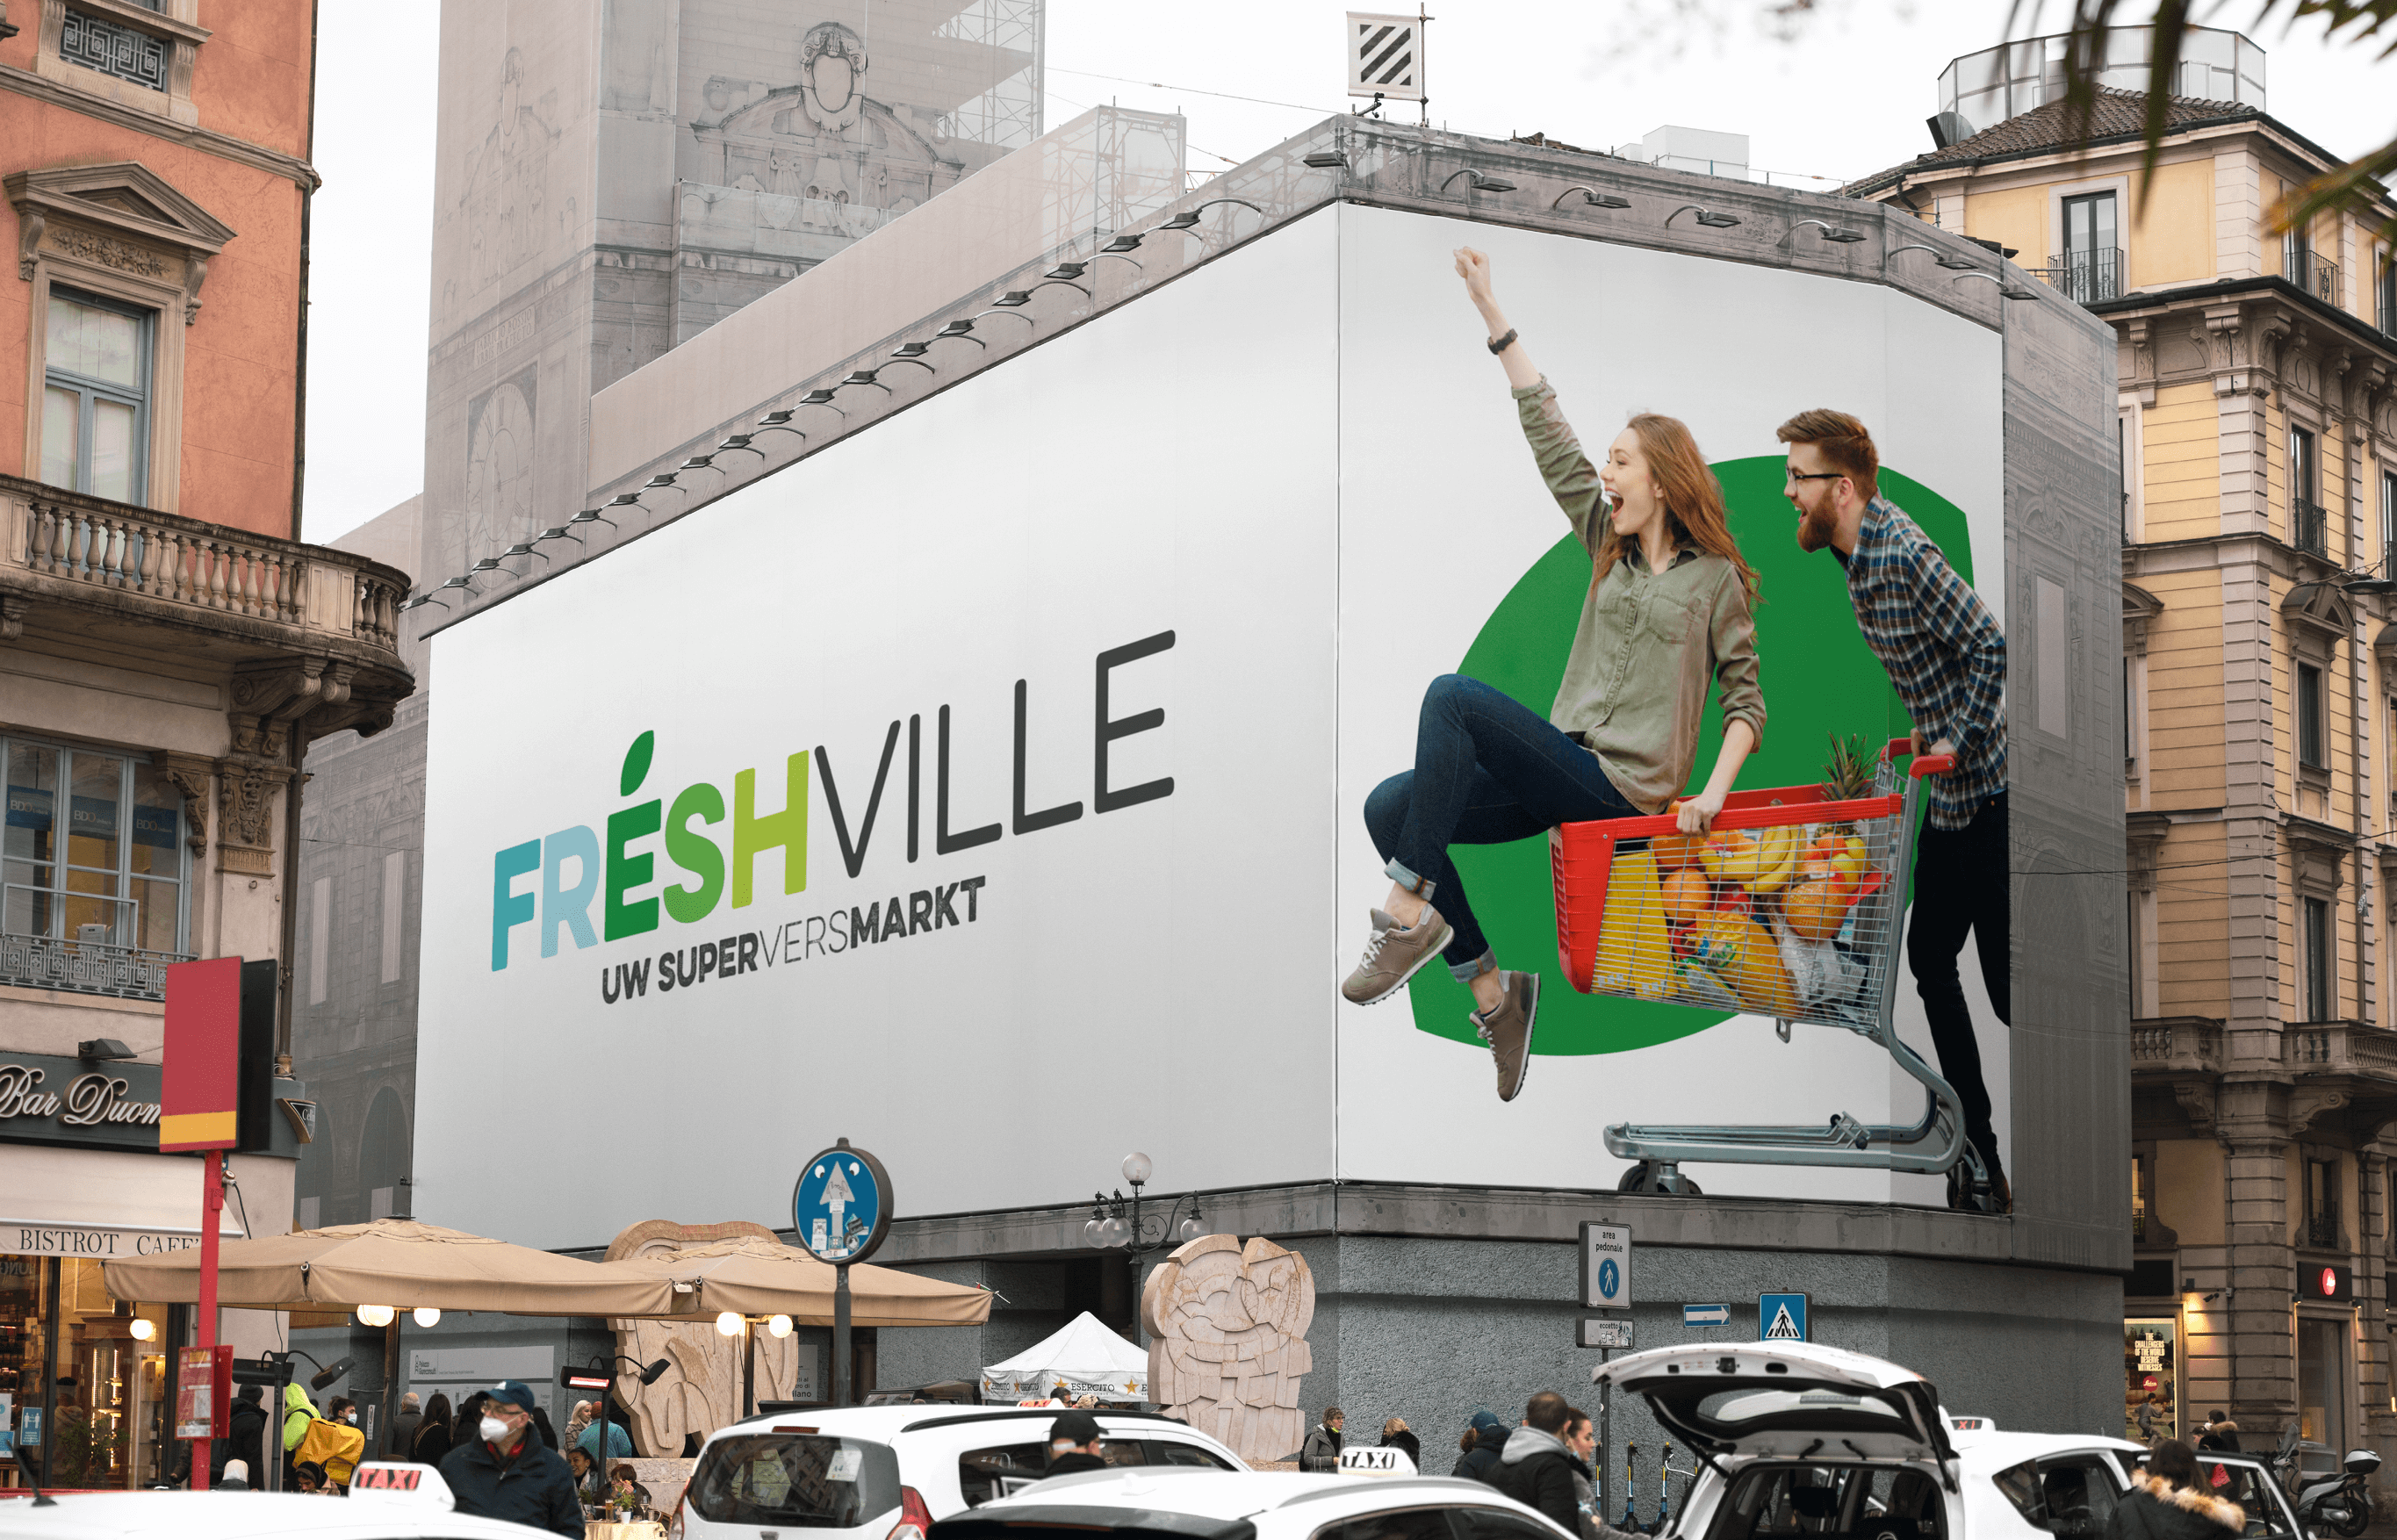 Freshville5